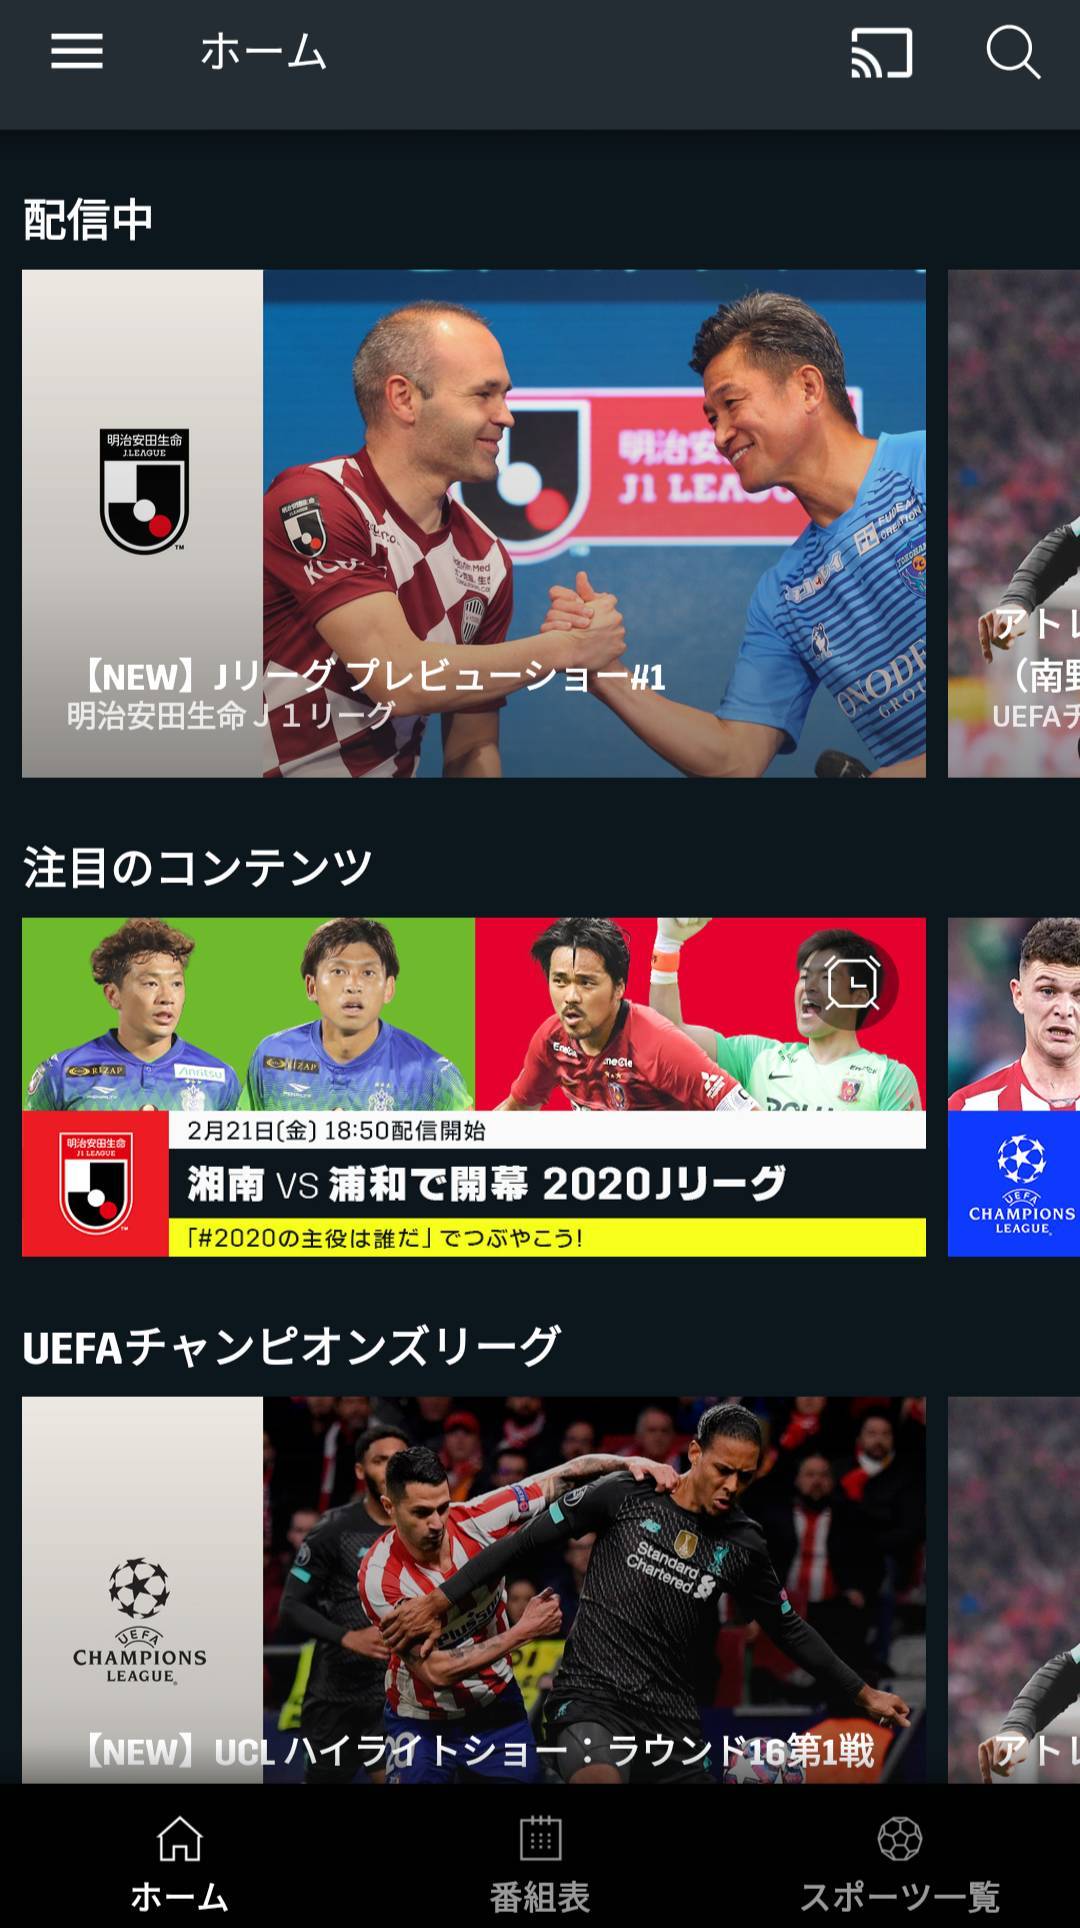 国内サッカー Jリーグのネット中継をスマホで観る方法6つ 無料あり Appliv Topics